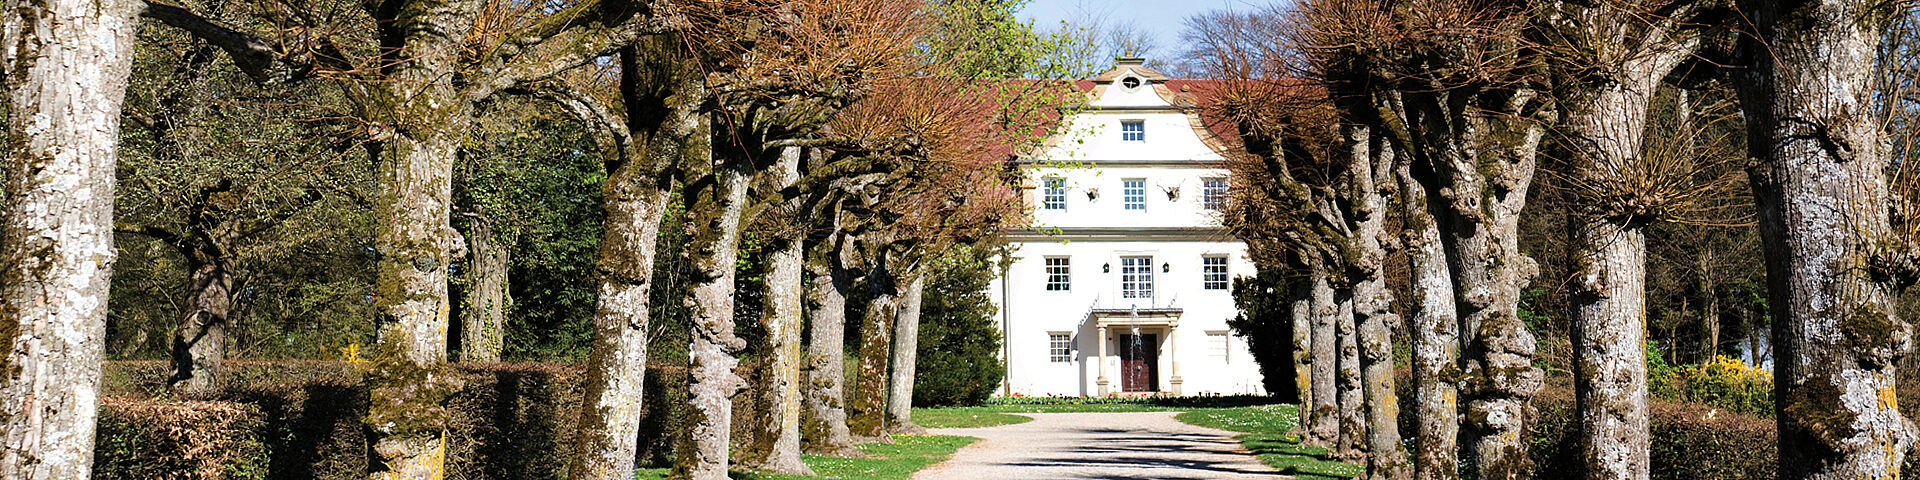 Ein weißes Gebäude, das Jagdschloss in Zweiflingen-Friedrichsruhe, ist am Ende einer Allee zu sehen.